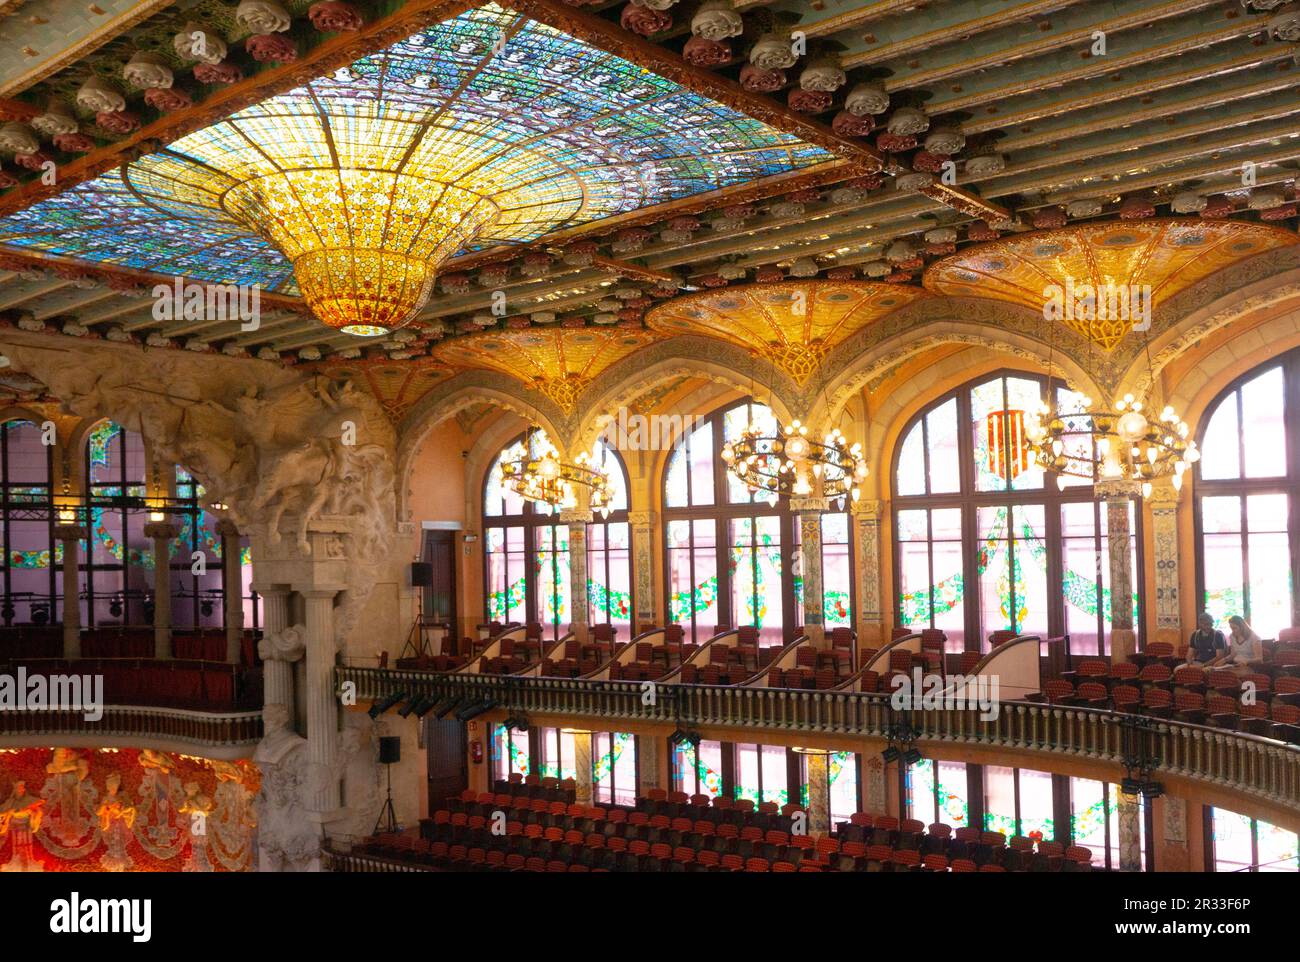 Le Palais de la musique catalane (salle de concert), site classé au patrimoine mondial de l'UNESCO, est l'incarnation du style Art Nouveau moderniste. Barcelone, Espagne. Banque D'Images